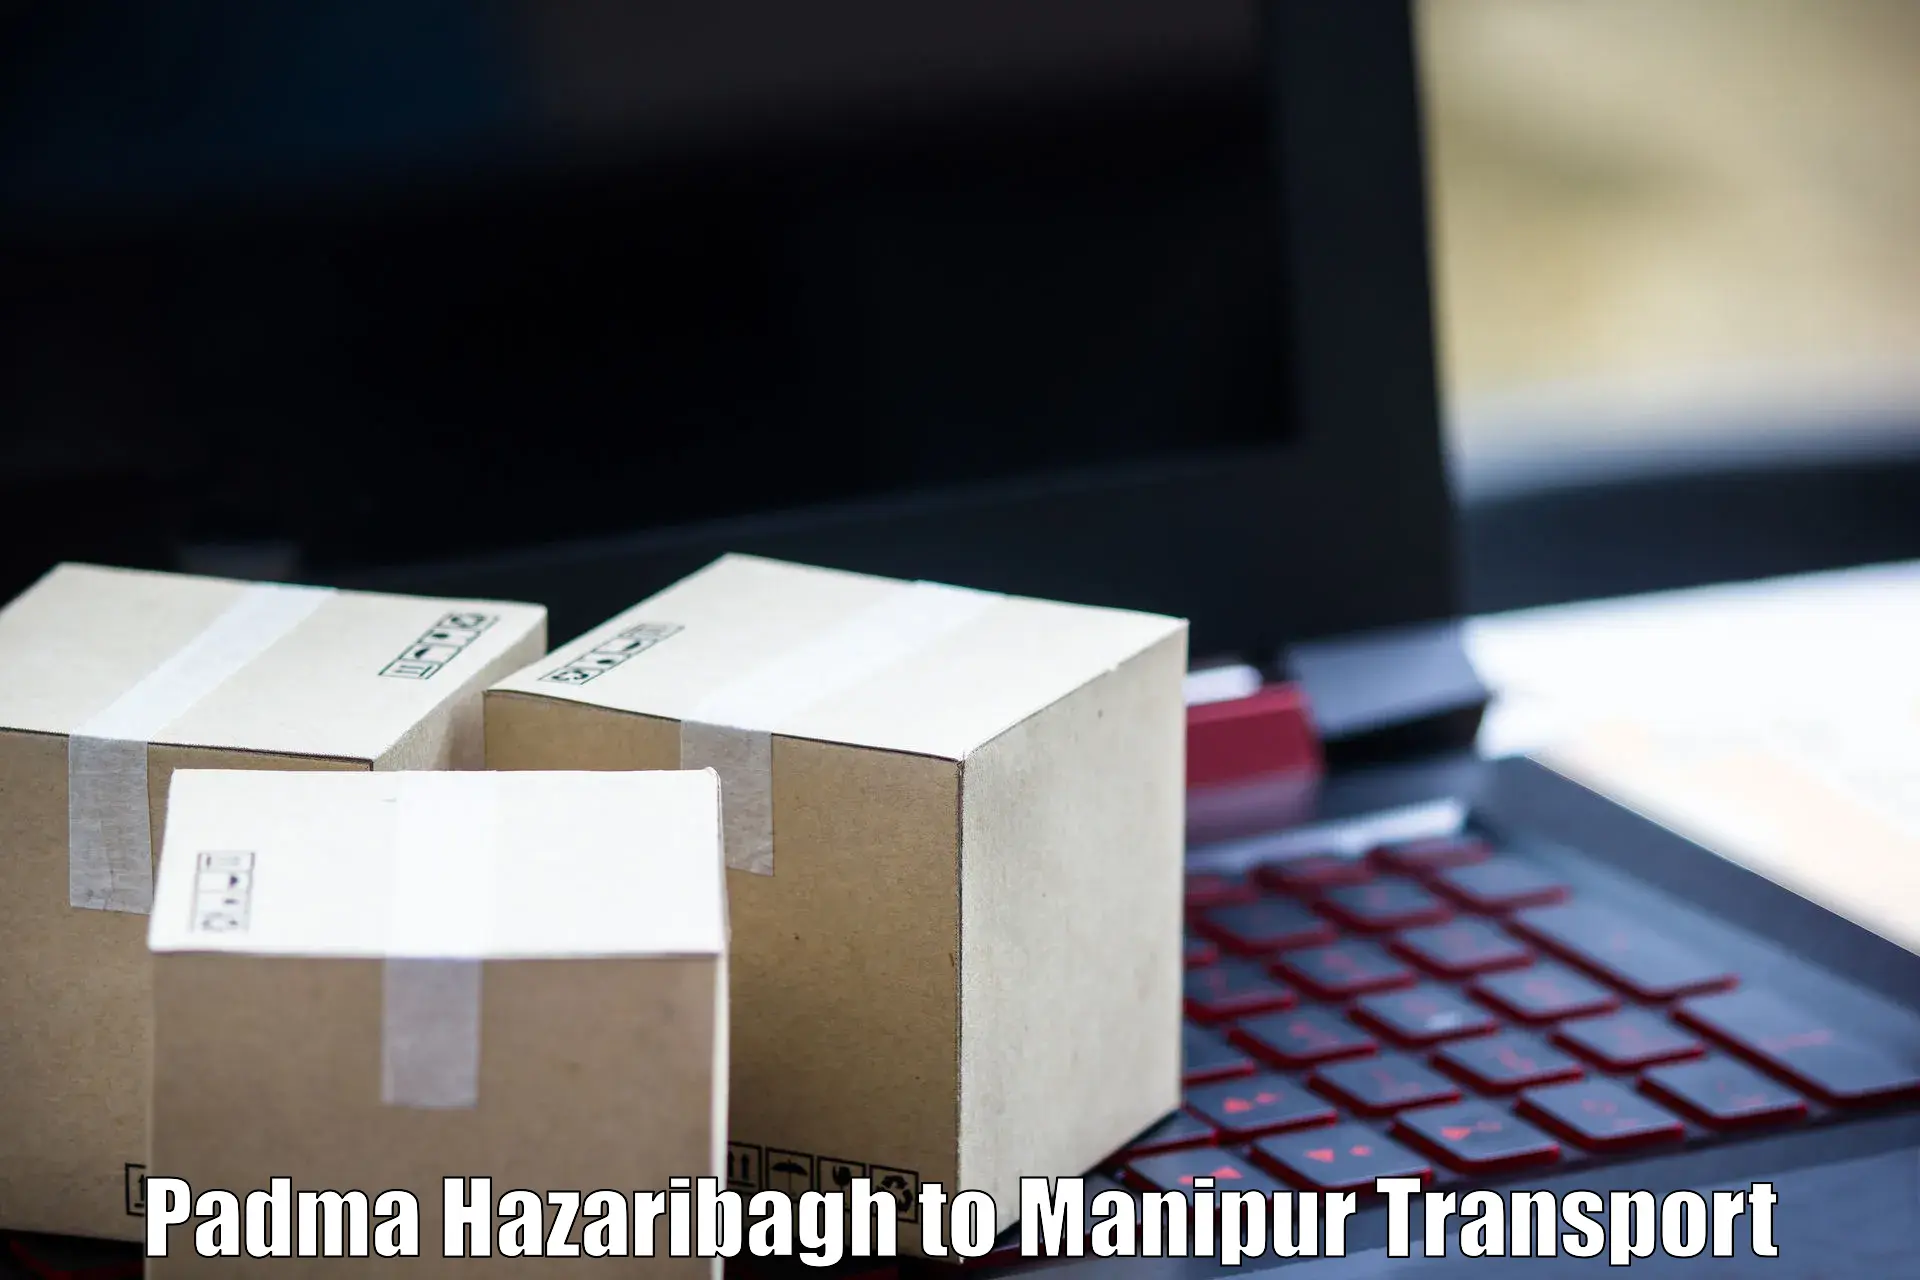 Nearest transport service Padma Hazaribagh to Kangpokpi